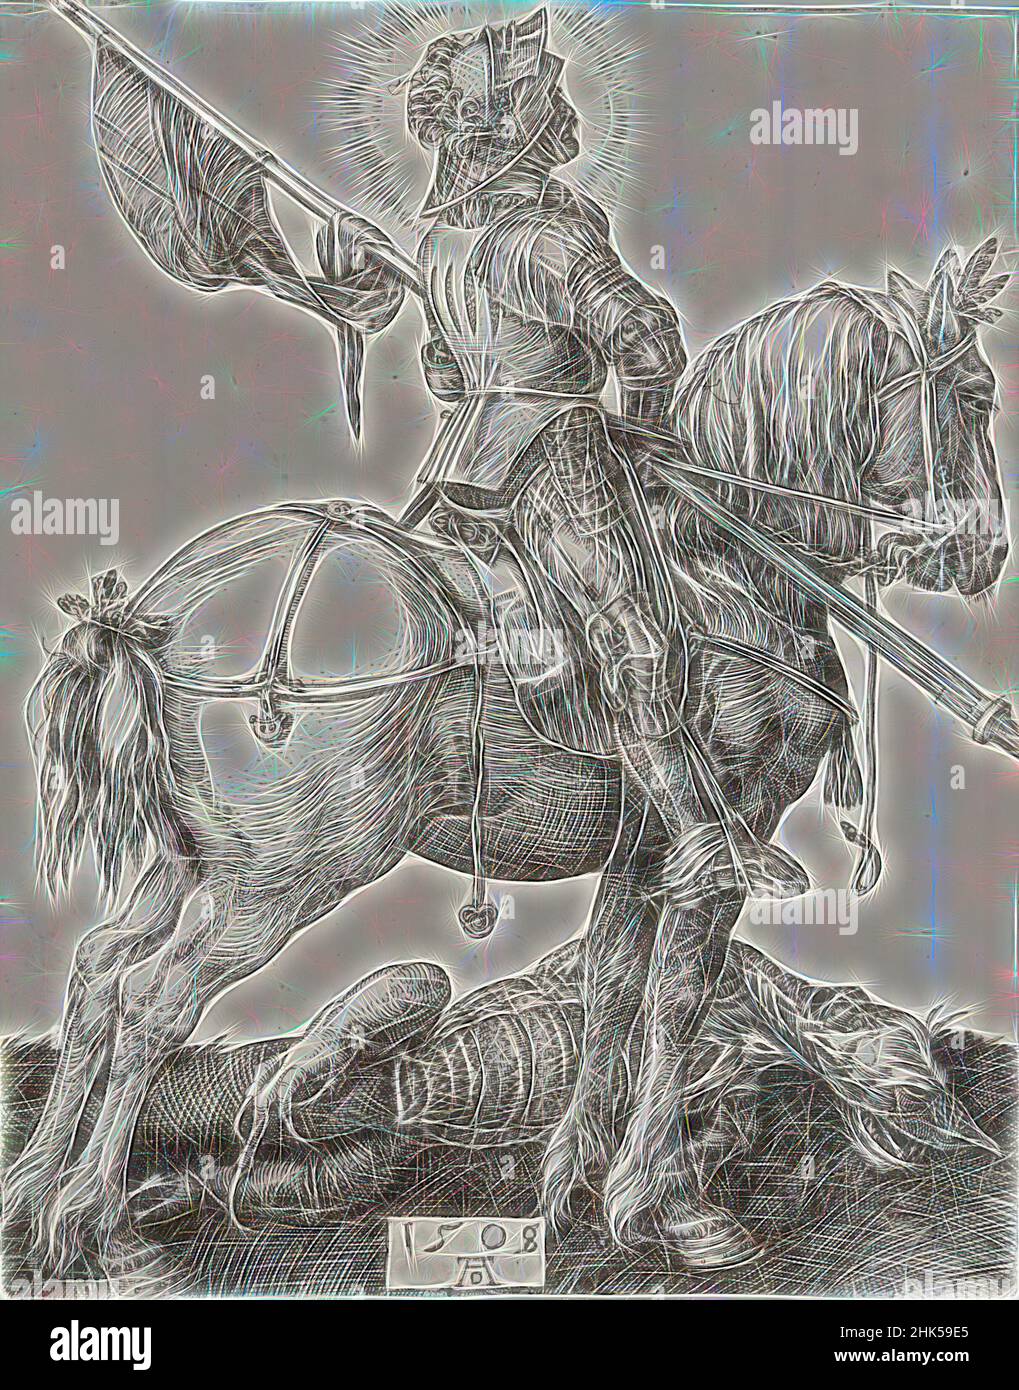 Inspiré par Saint George et le Dragon, Albrecht Dürer, allemand, 1471-1528, gravure sur papier ponté, 1508, 4 1/4 x 3 3/8 po, 10,8 x 8,6 cm, croisé, dragon, drapeau, halo, cheval, chevalier, puissant, slayer, victorieux, La guerre, repensée par Artotop. L'art classique réinventé avec une touche moderne. Conception de lumière chaleureuse et gaie, de luminosité et de rayonnement de lumière. La photographie s'inspire du surréalisme et du futurisme, embrassant l'énergie dynamique de la technologie moderne, du mouvement, de la vitesse et révolutionne la culture Banque D'Images